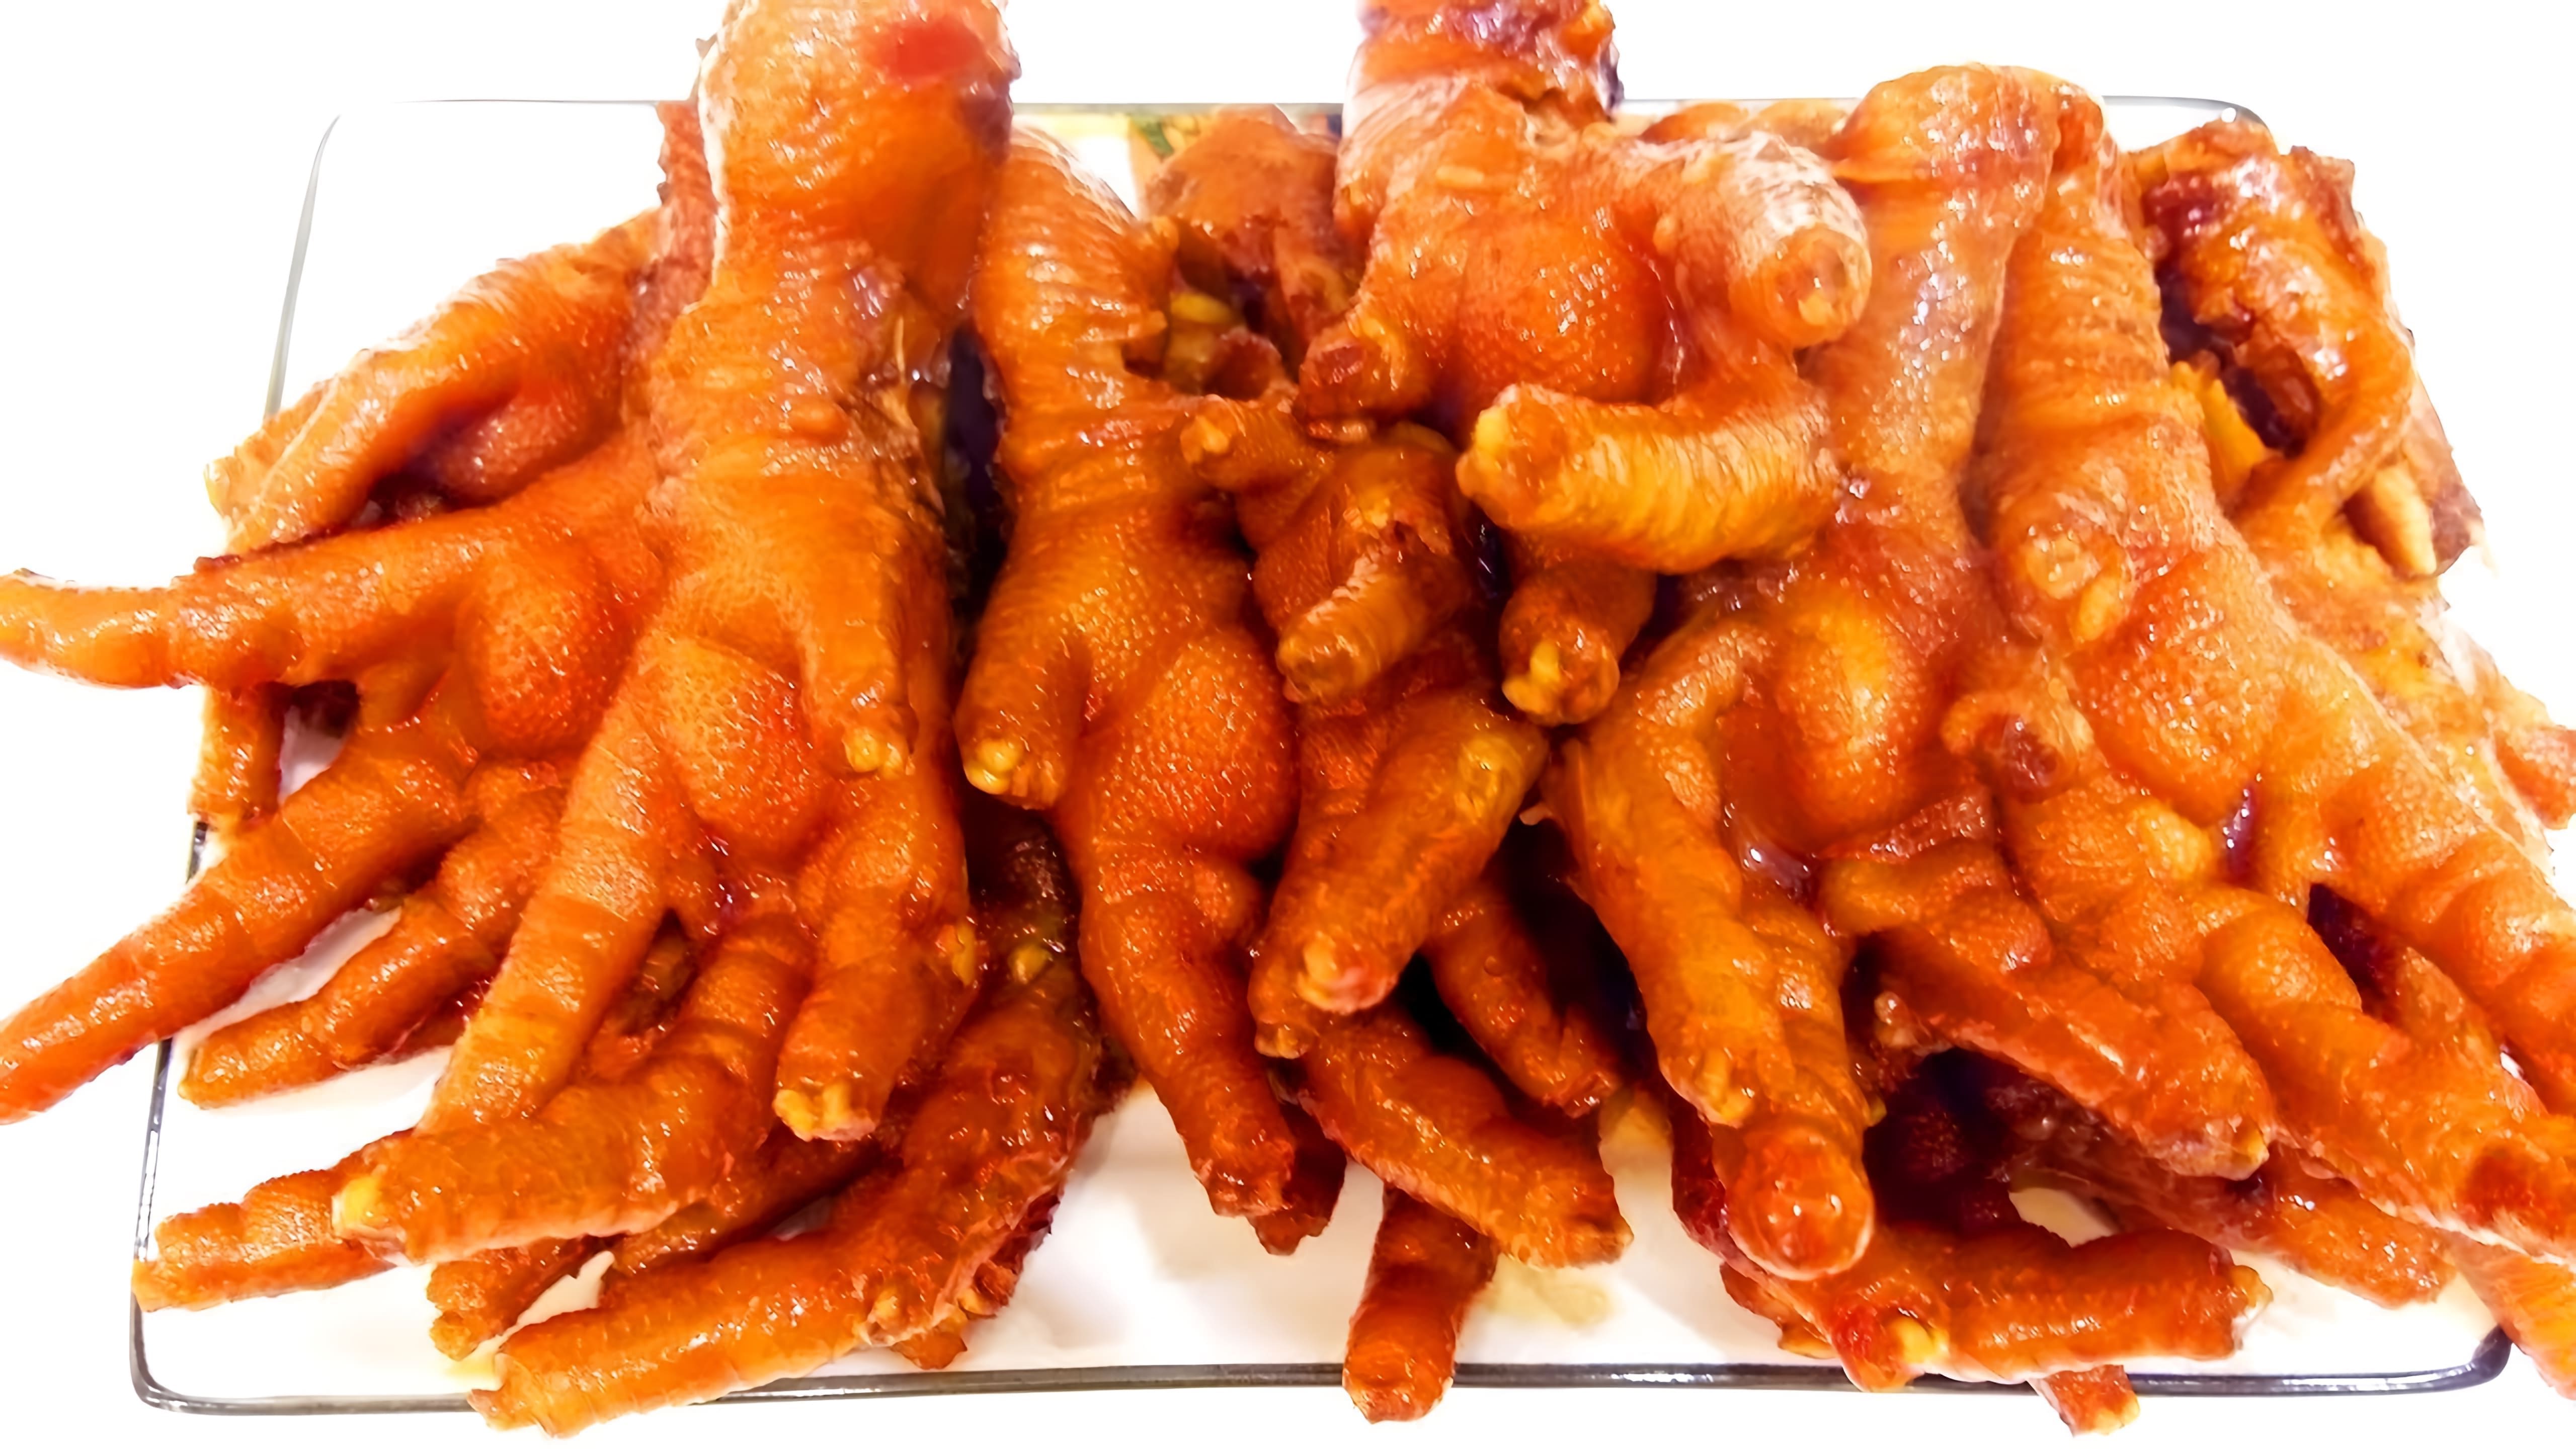 В этом видео демонстрируется процесс приготовления куриных лап, которые являются популярным китайским деликатесом